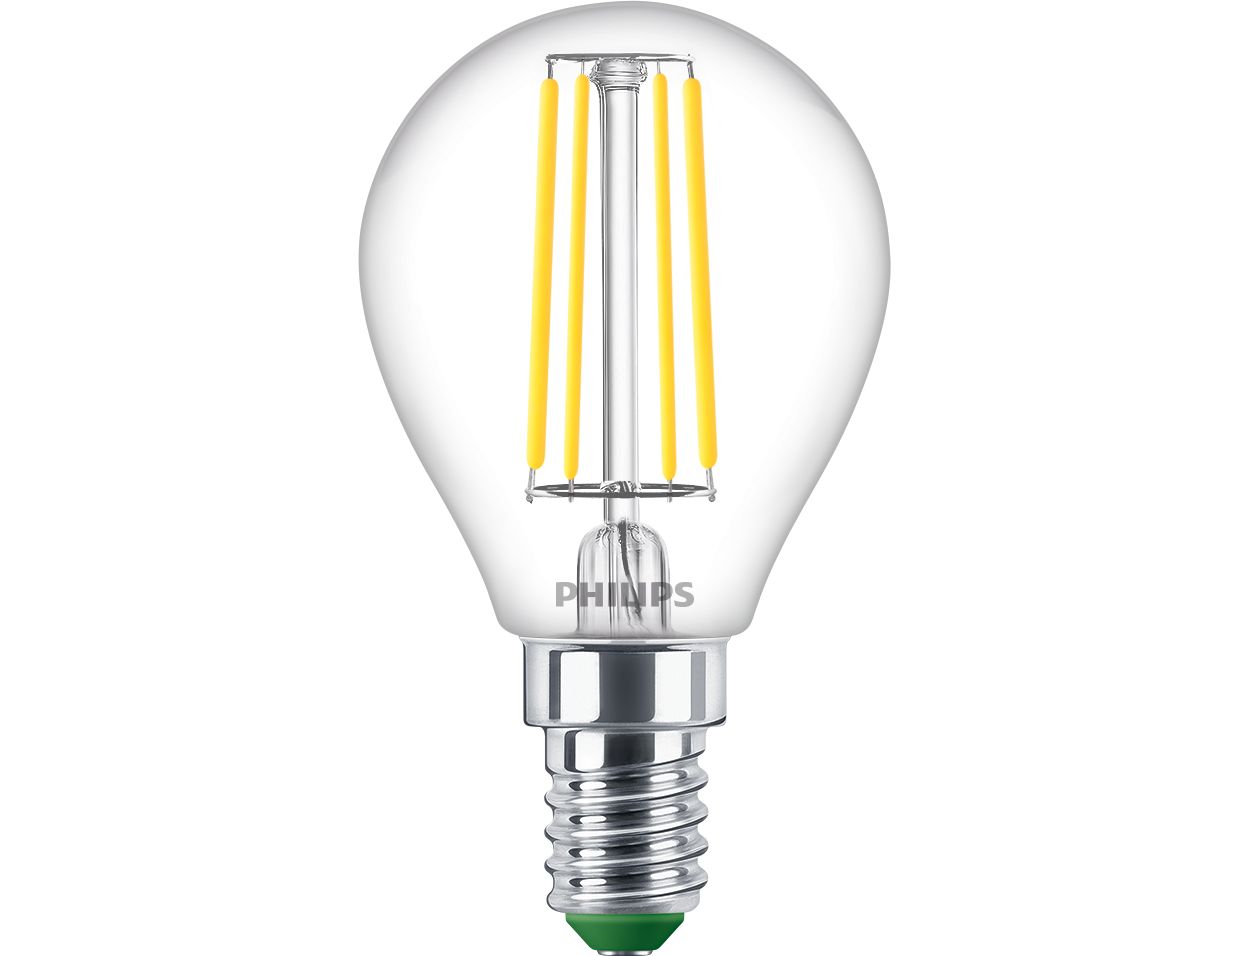 Ampoule UltraEfficient, notre ampoule LED la plus économe en énergie à ce jour